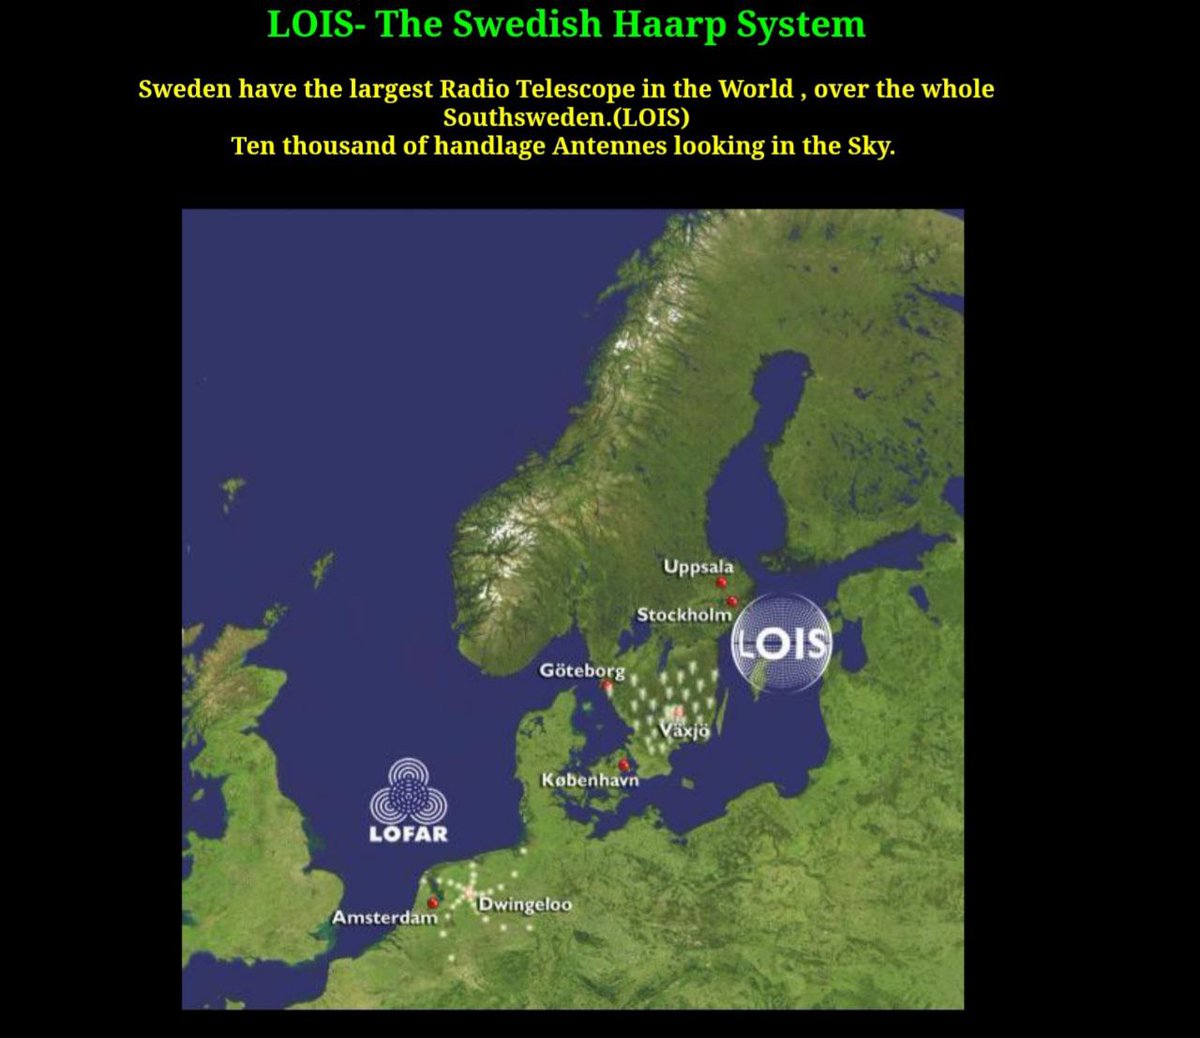 Het document onthult dat LOIS, een nieuw HAARP-systeem, heel Zuid-Zweden bestrijkt. 

LOIS is het grootste HAARP-systeem ter wereld en is verbonden met het Lofar-systeem in Midden-Europa en Icecat in het noorden. Slechts weinigen zijn zich bewust van dit systeem. 

LOIS strekt